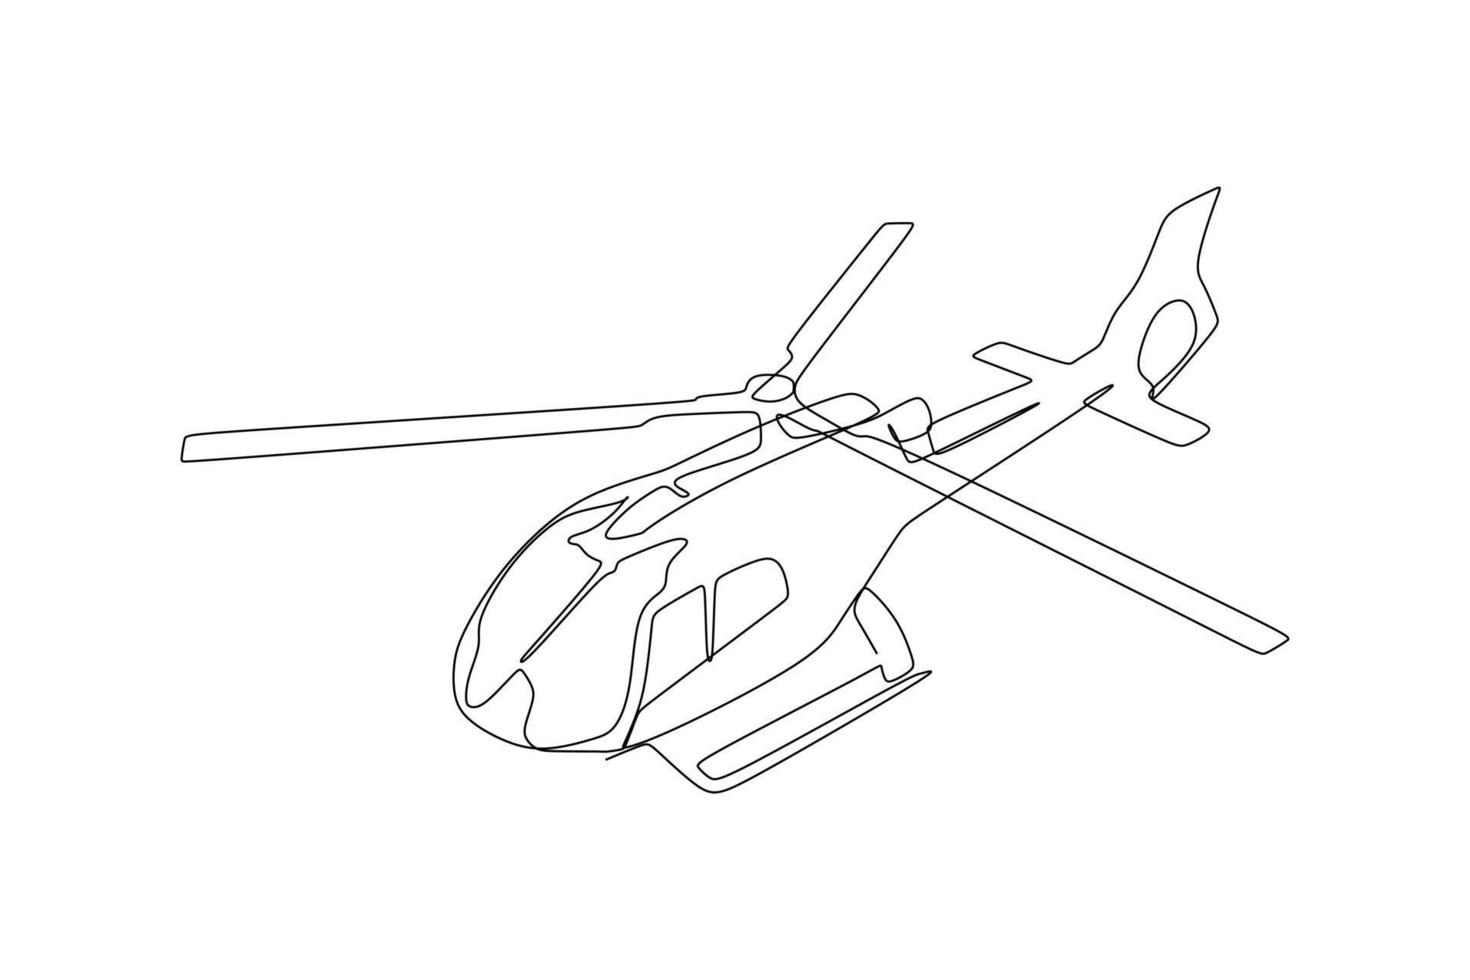 enda kontinuerlig linjeritning av en helikopter som flyger. hand ritstil för transport koncept vektor